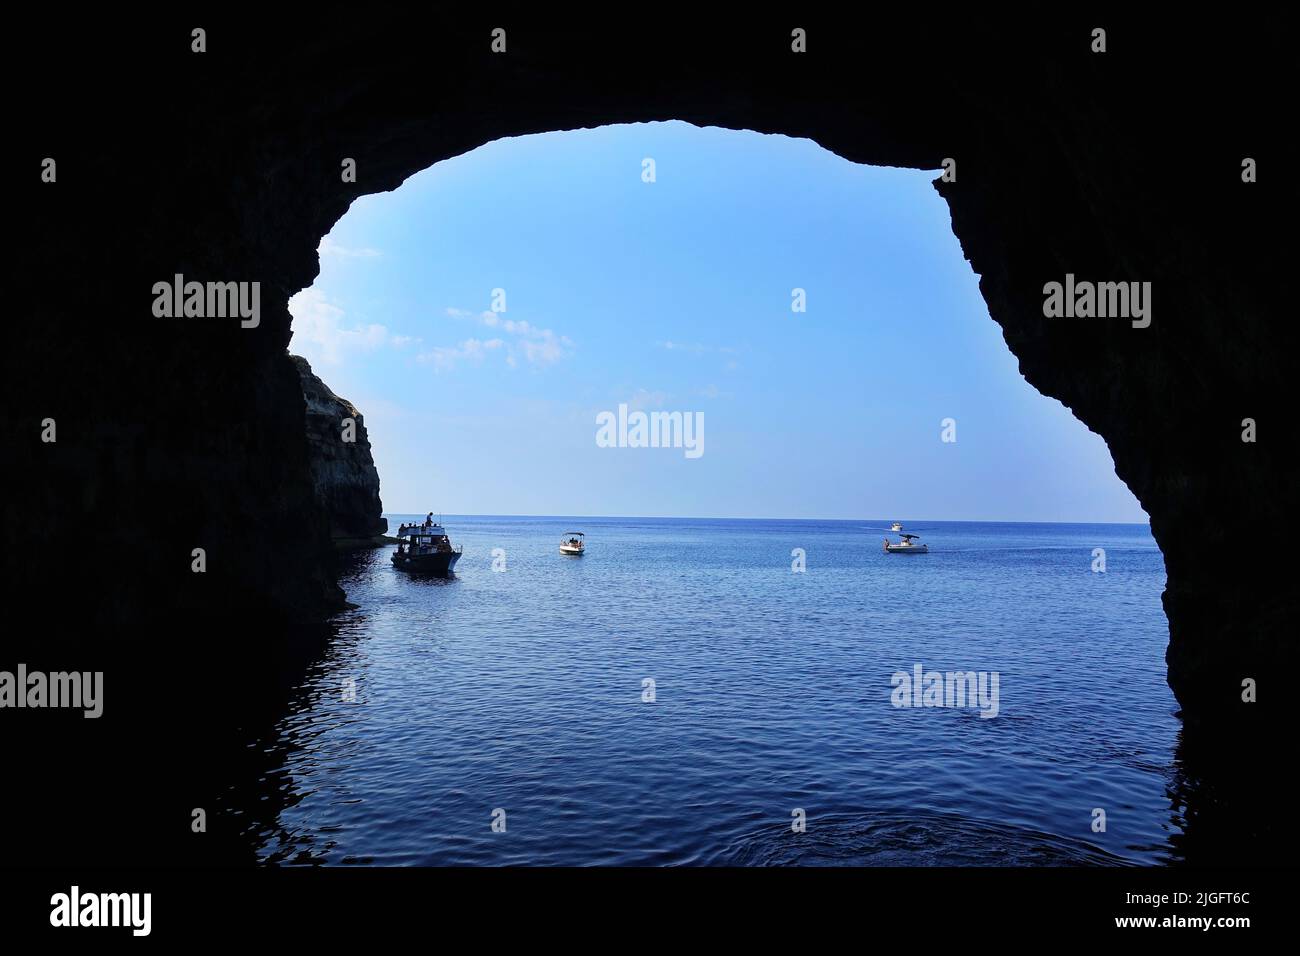 Blick auf die Küste der Insel Lampedusa Meer Paradies für Yachten und Schwimmer. Lampedusa, Italien - August 2019 Stockfoto